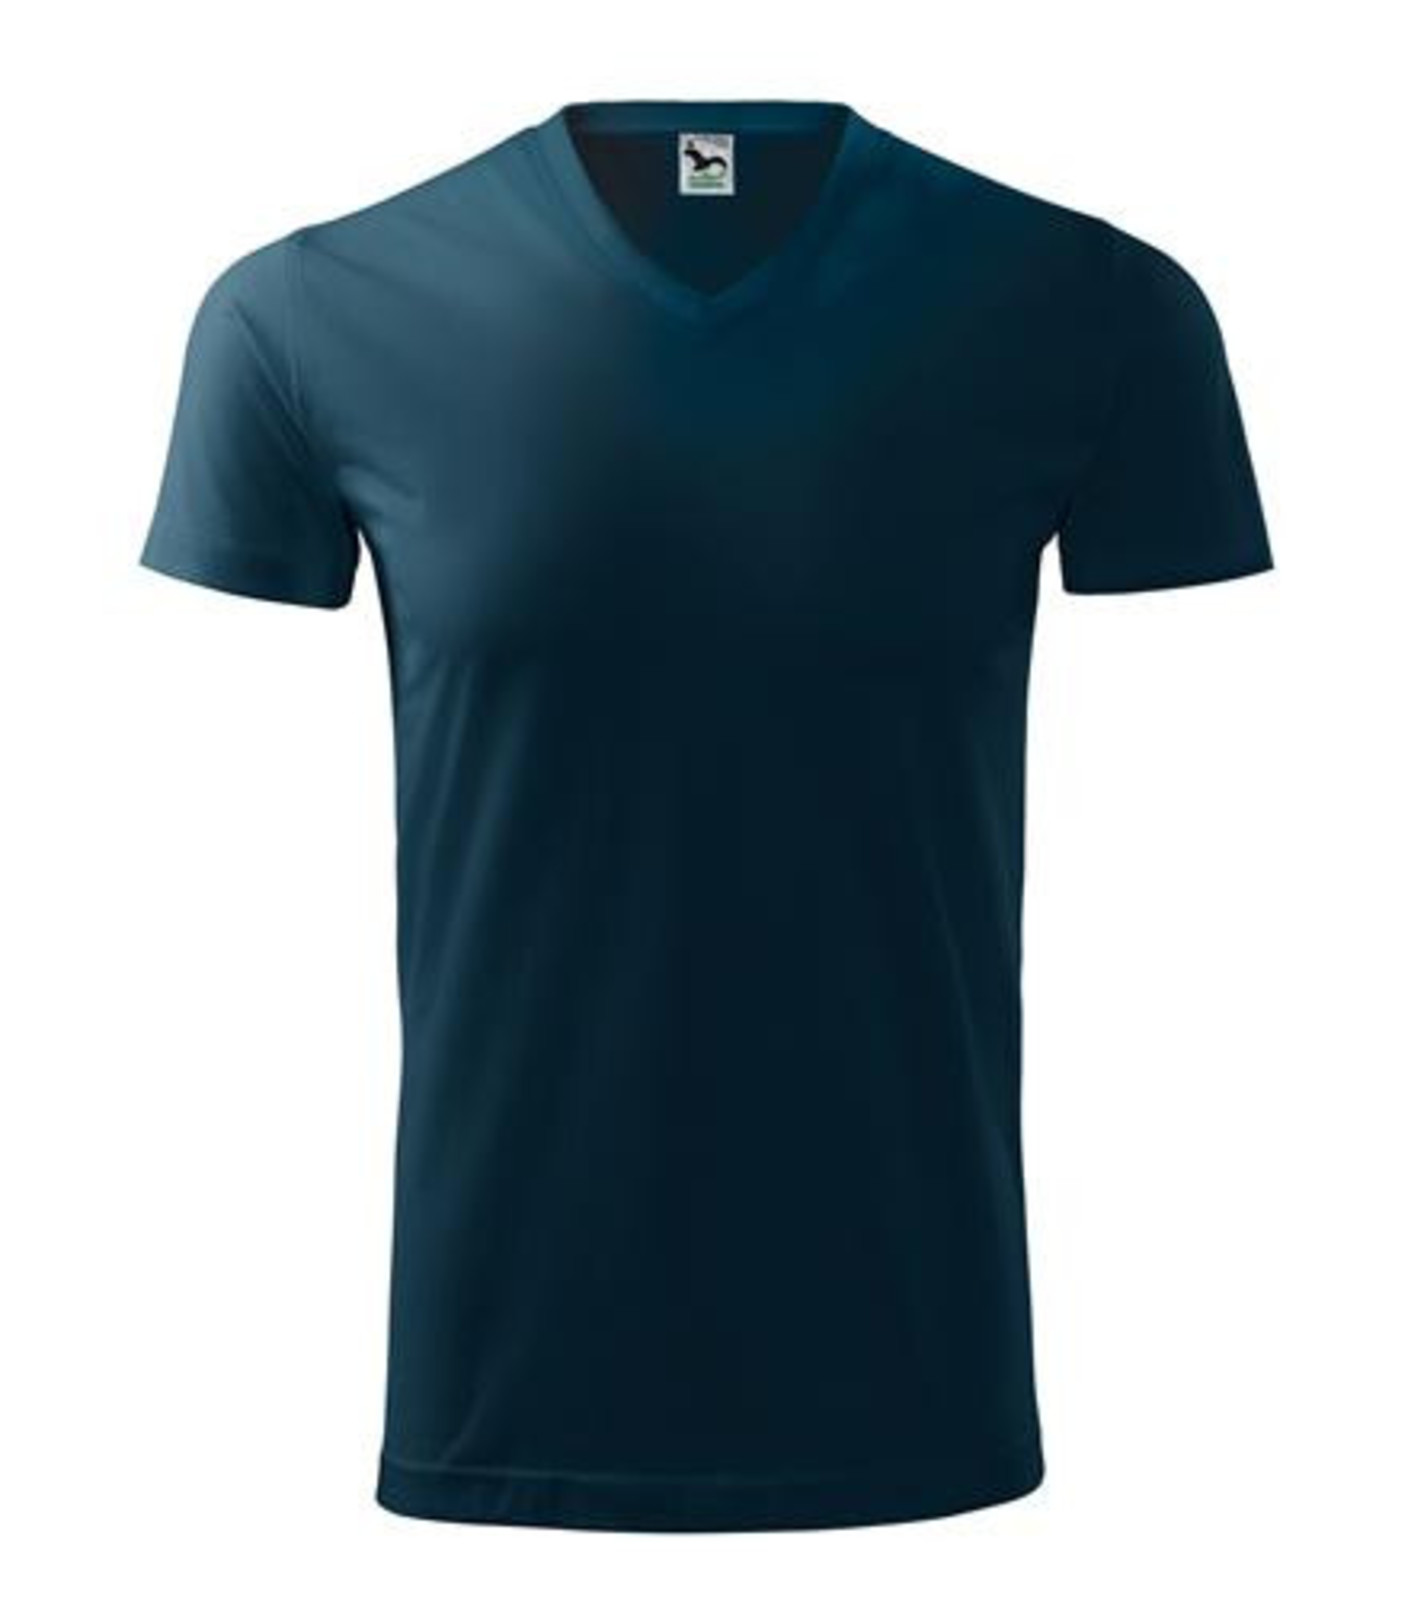 Unisex tričko s V výstrihom Adler Heavy V-Neck 111 - veľkosť: M, farba: tmavo modrá